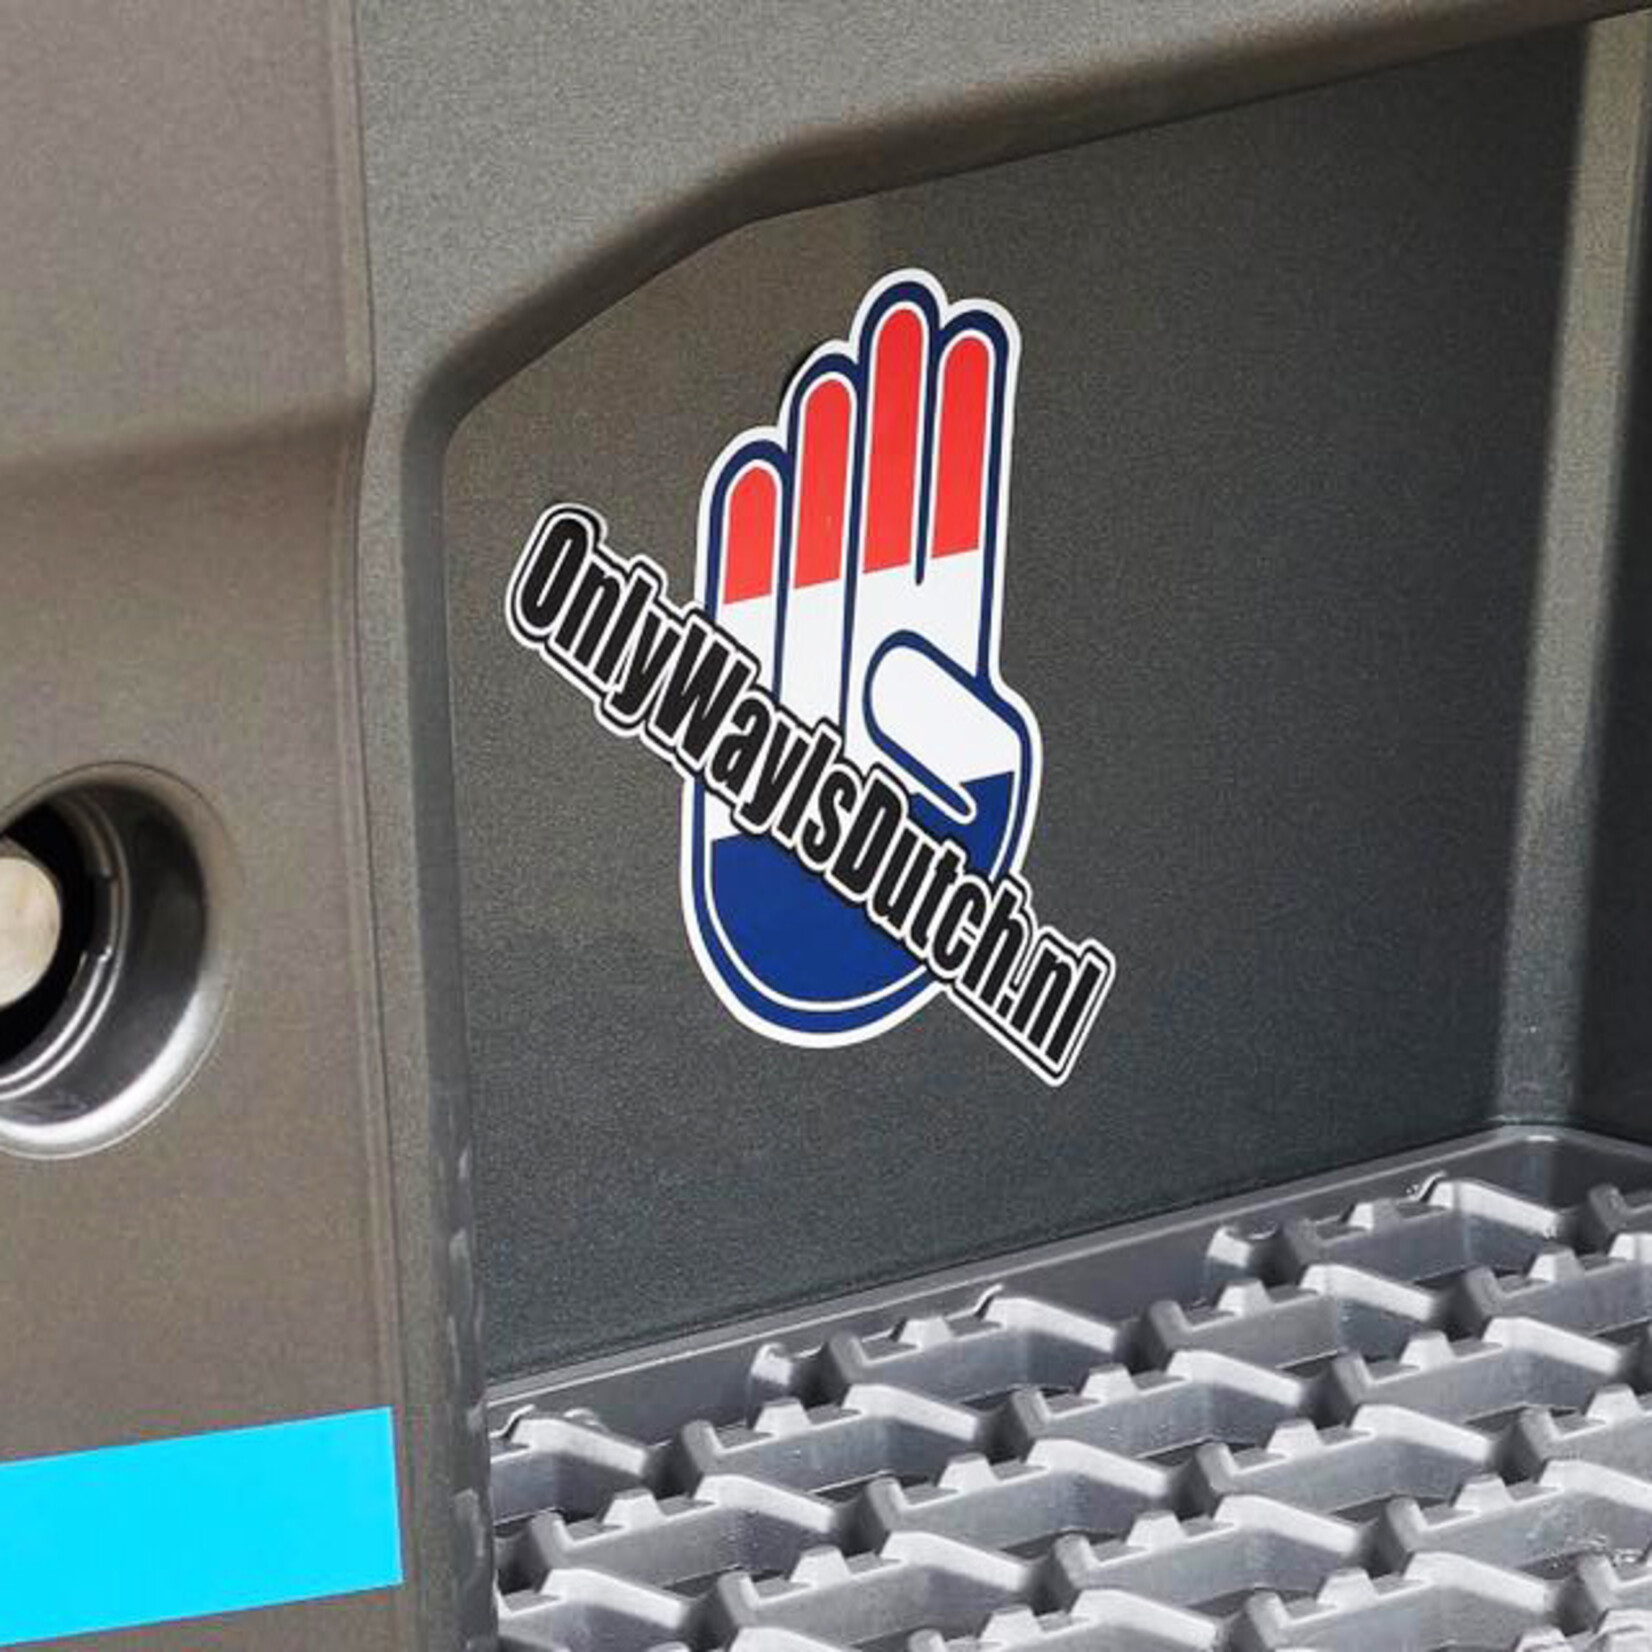 ONLY WAY IS DUTCH OWID Sticker Hand Logo